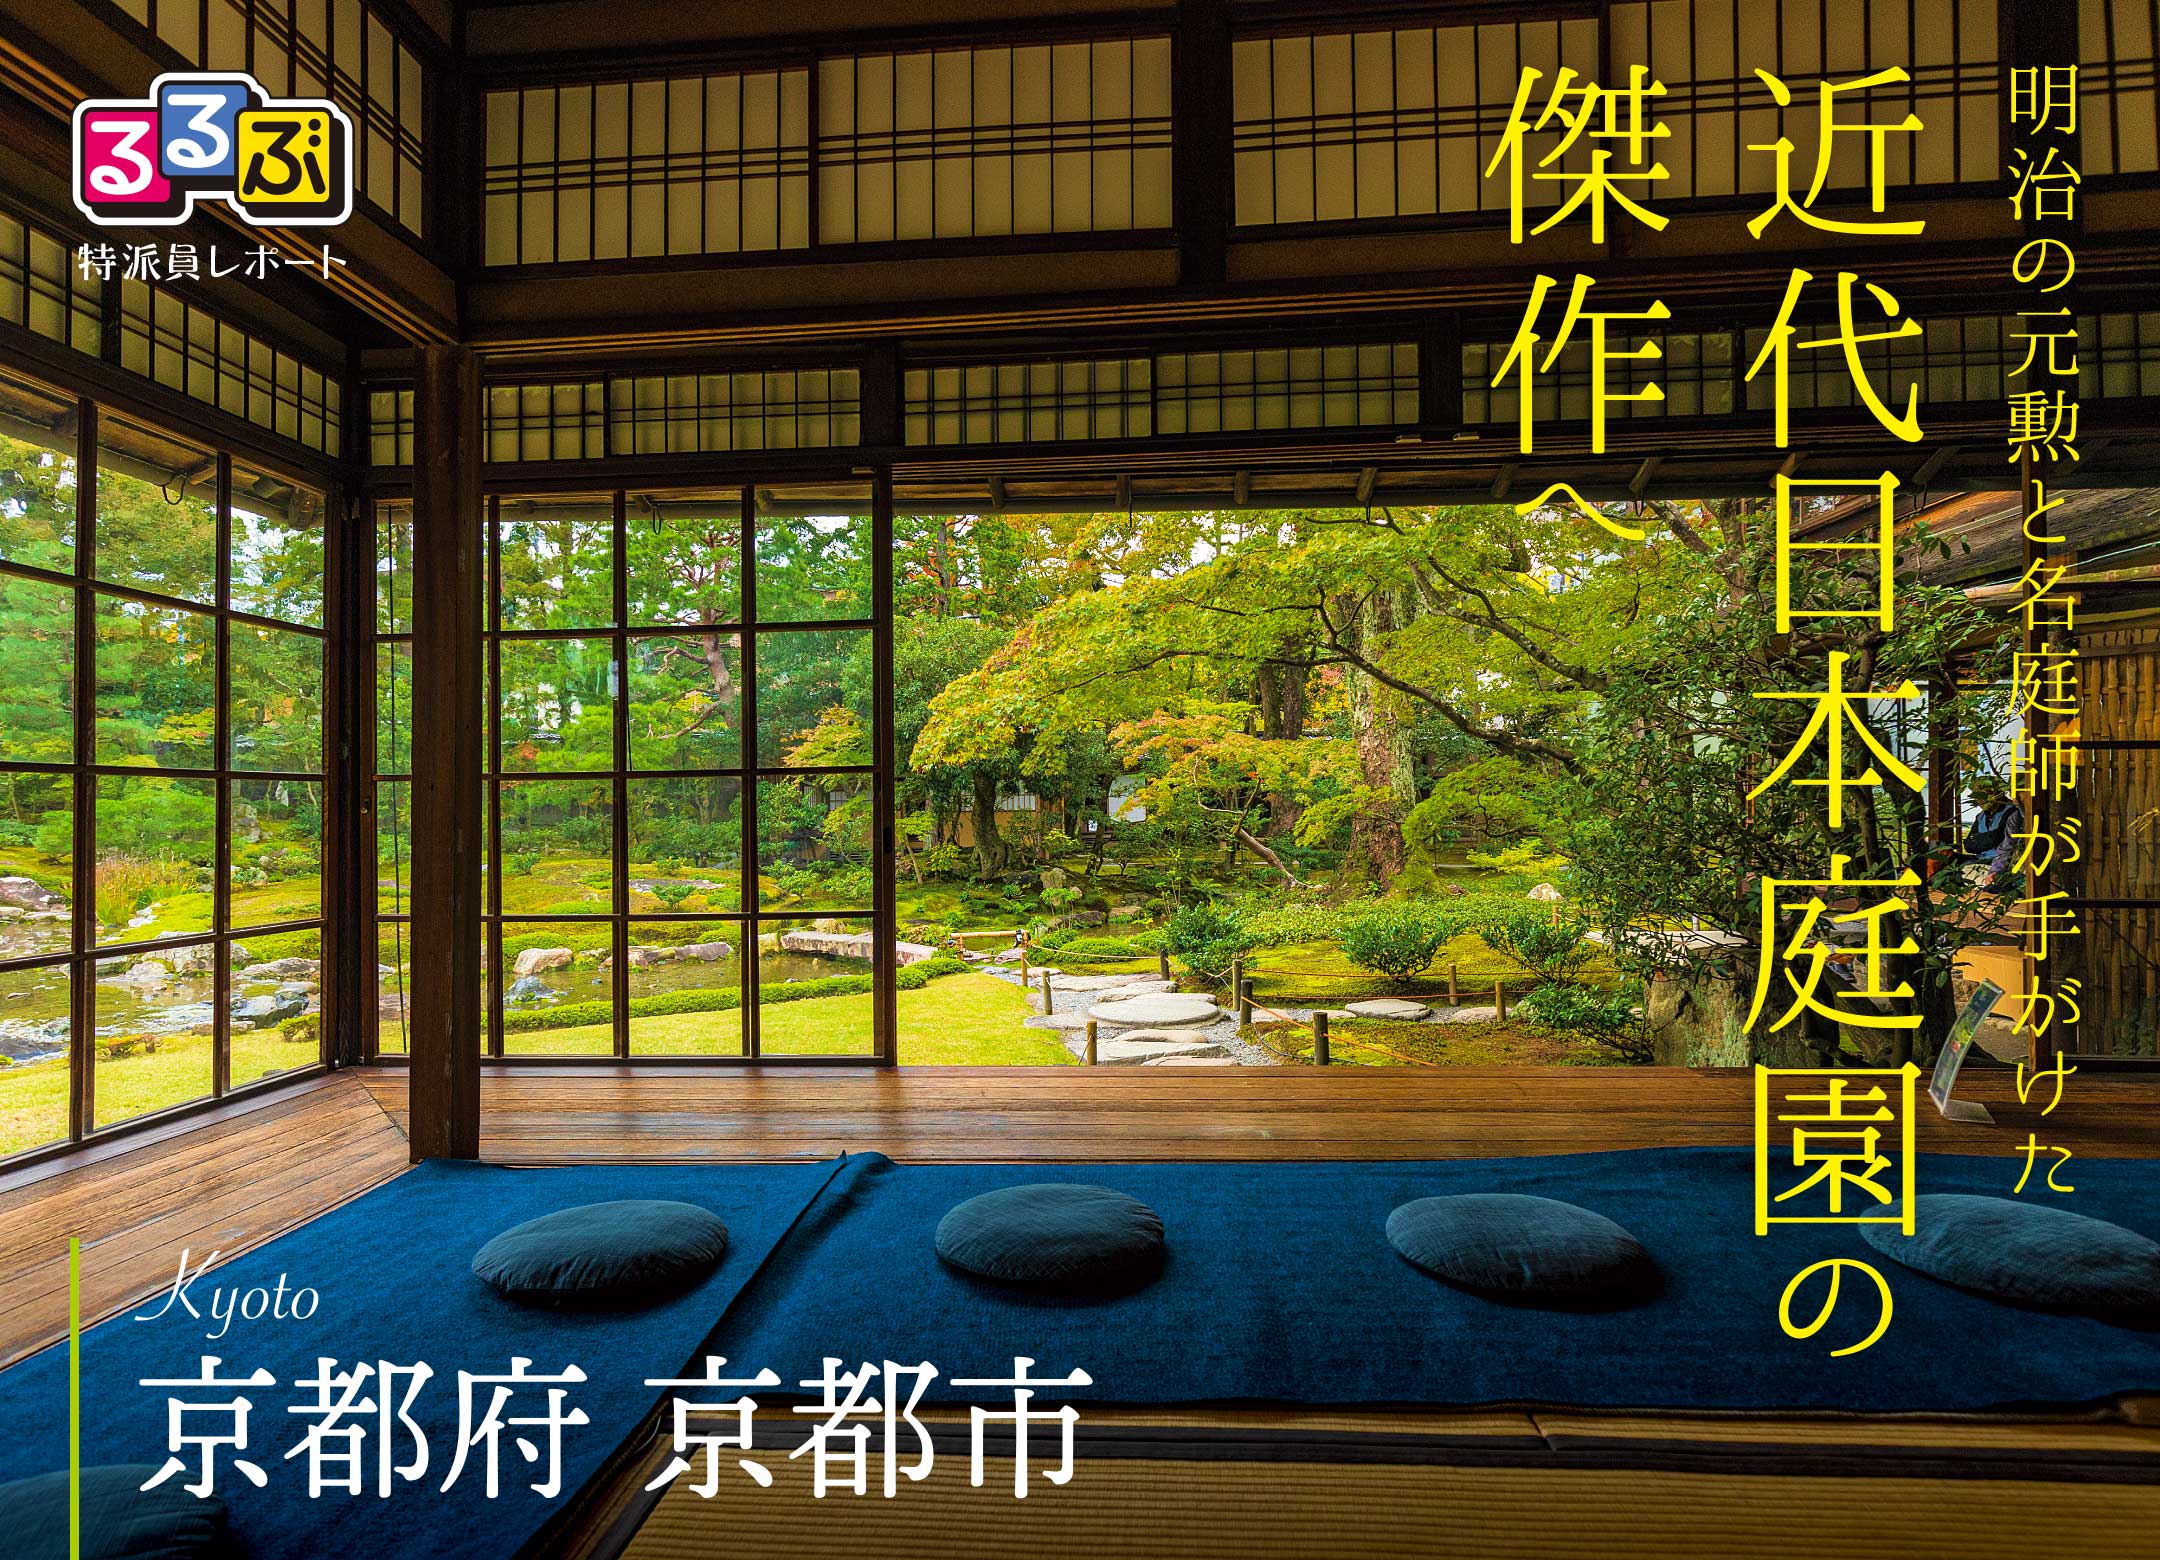 近代日本庭園の傑作へ | 京都府京都市 の旅行レポート